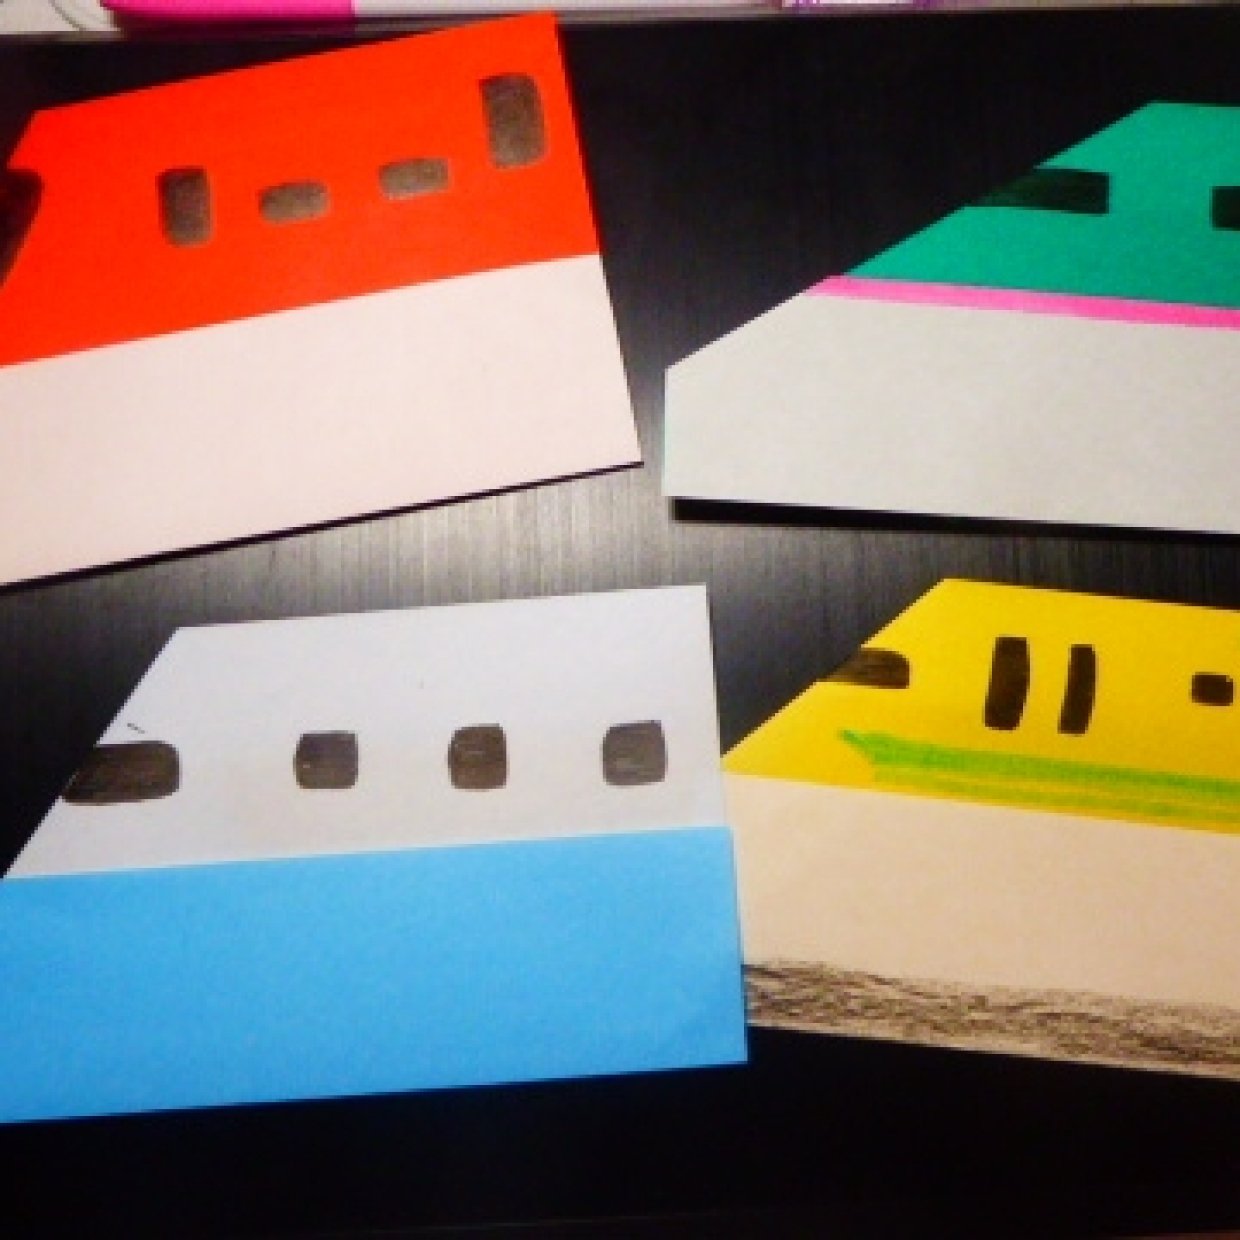  折り紙で『ドクターイエロー』３歳でも簡単に作れる！ 折り紙で作る新幹線が大人も子ども盛り上がった件 